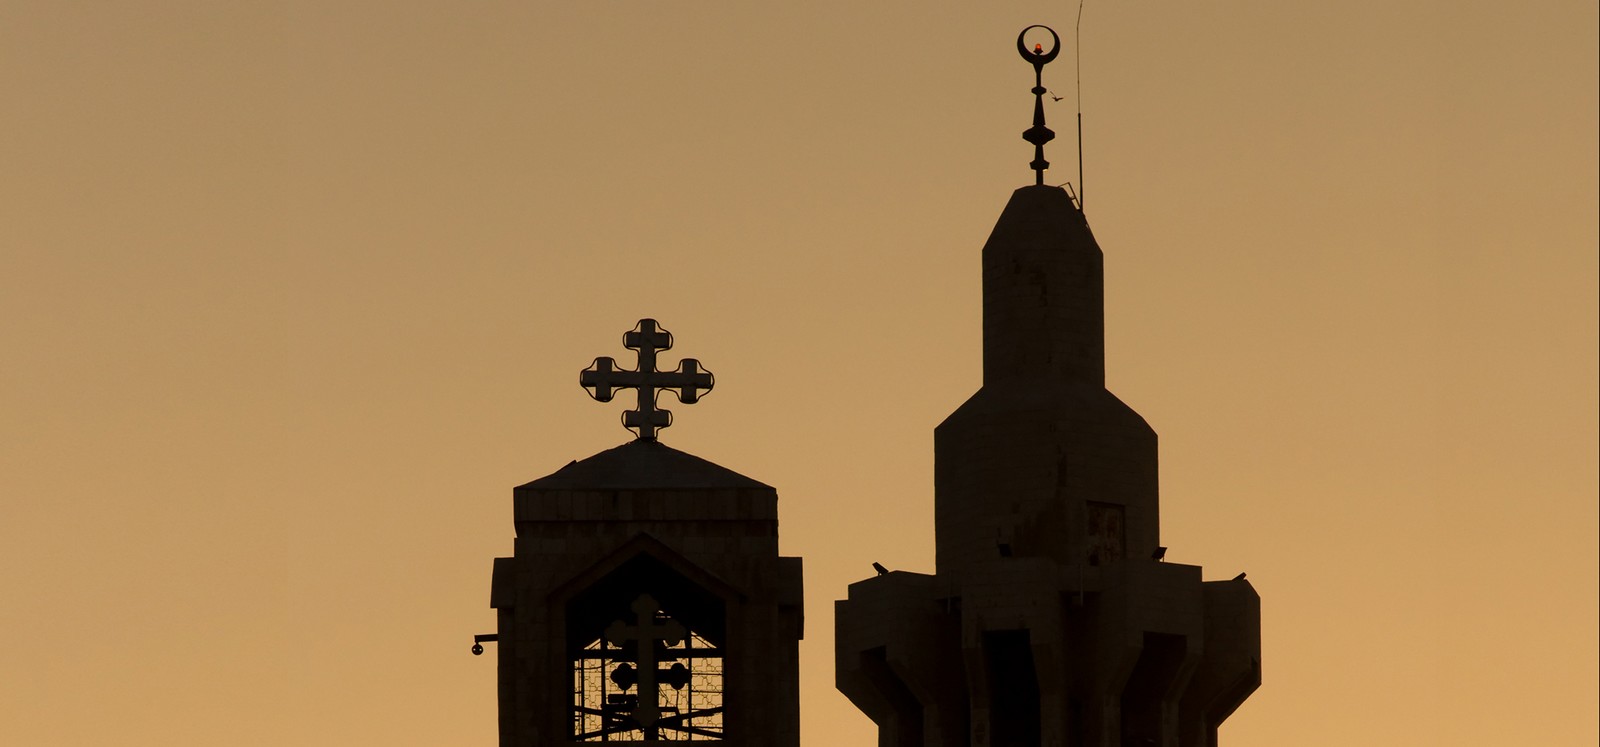 Las Diferencias entre el Espíritu del Cristianismo y del Islam